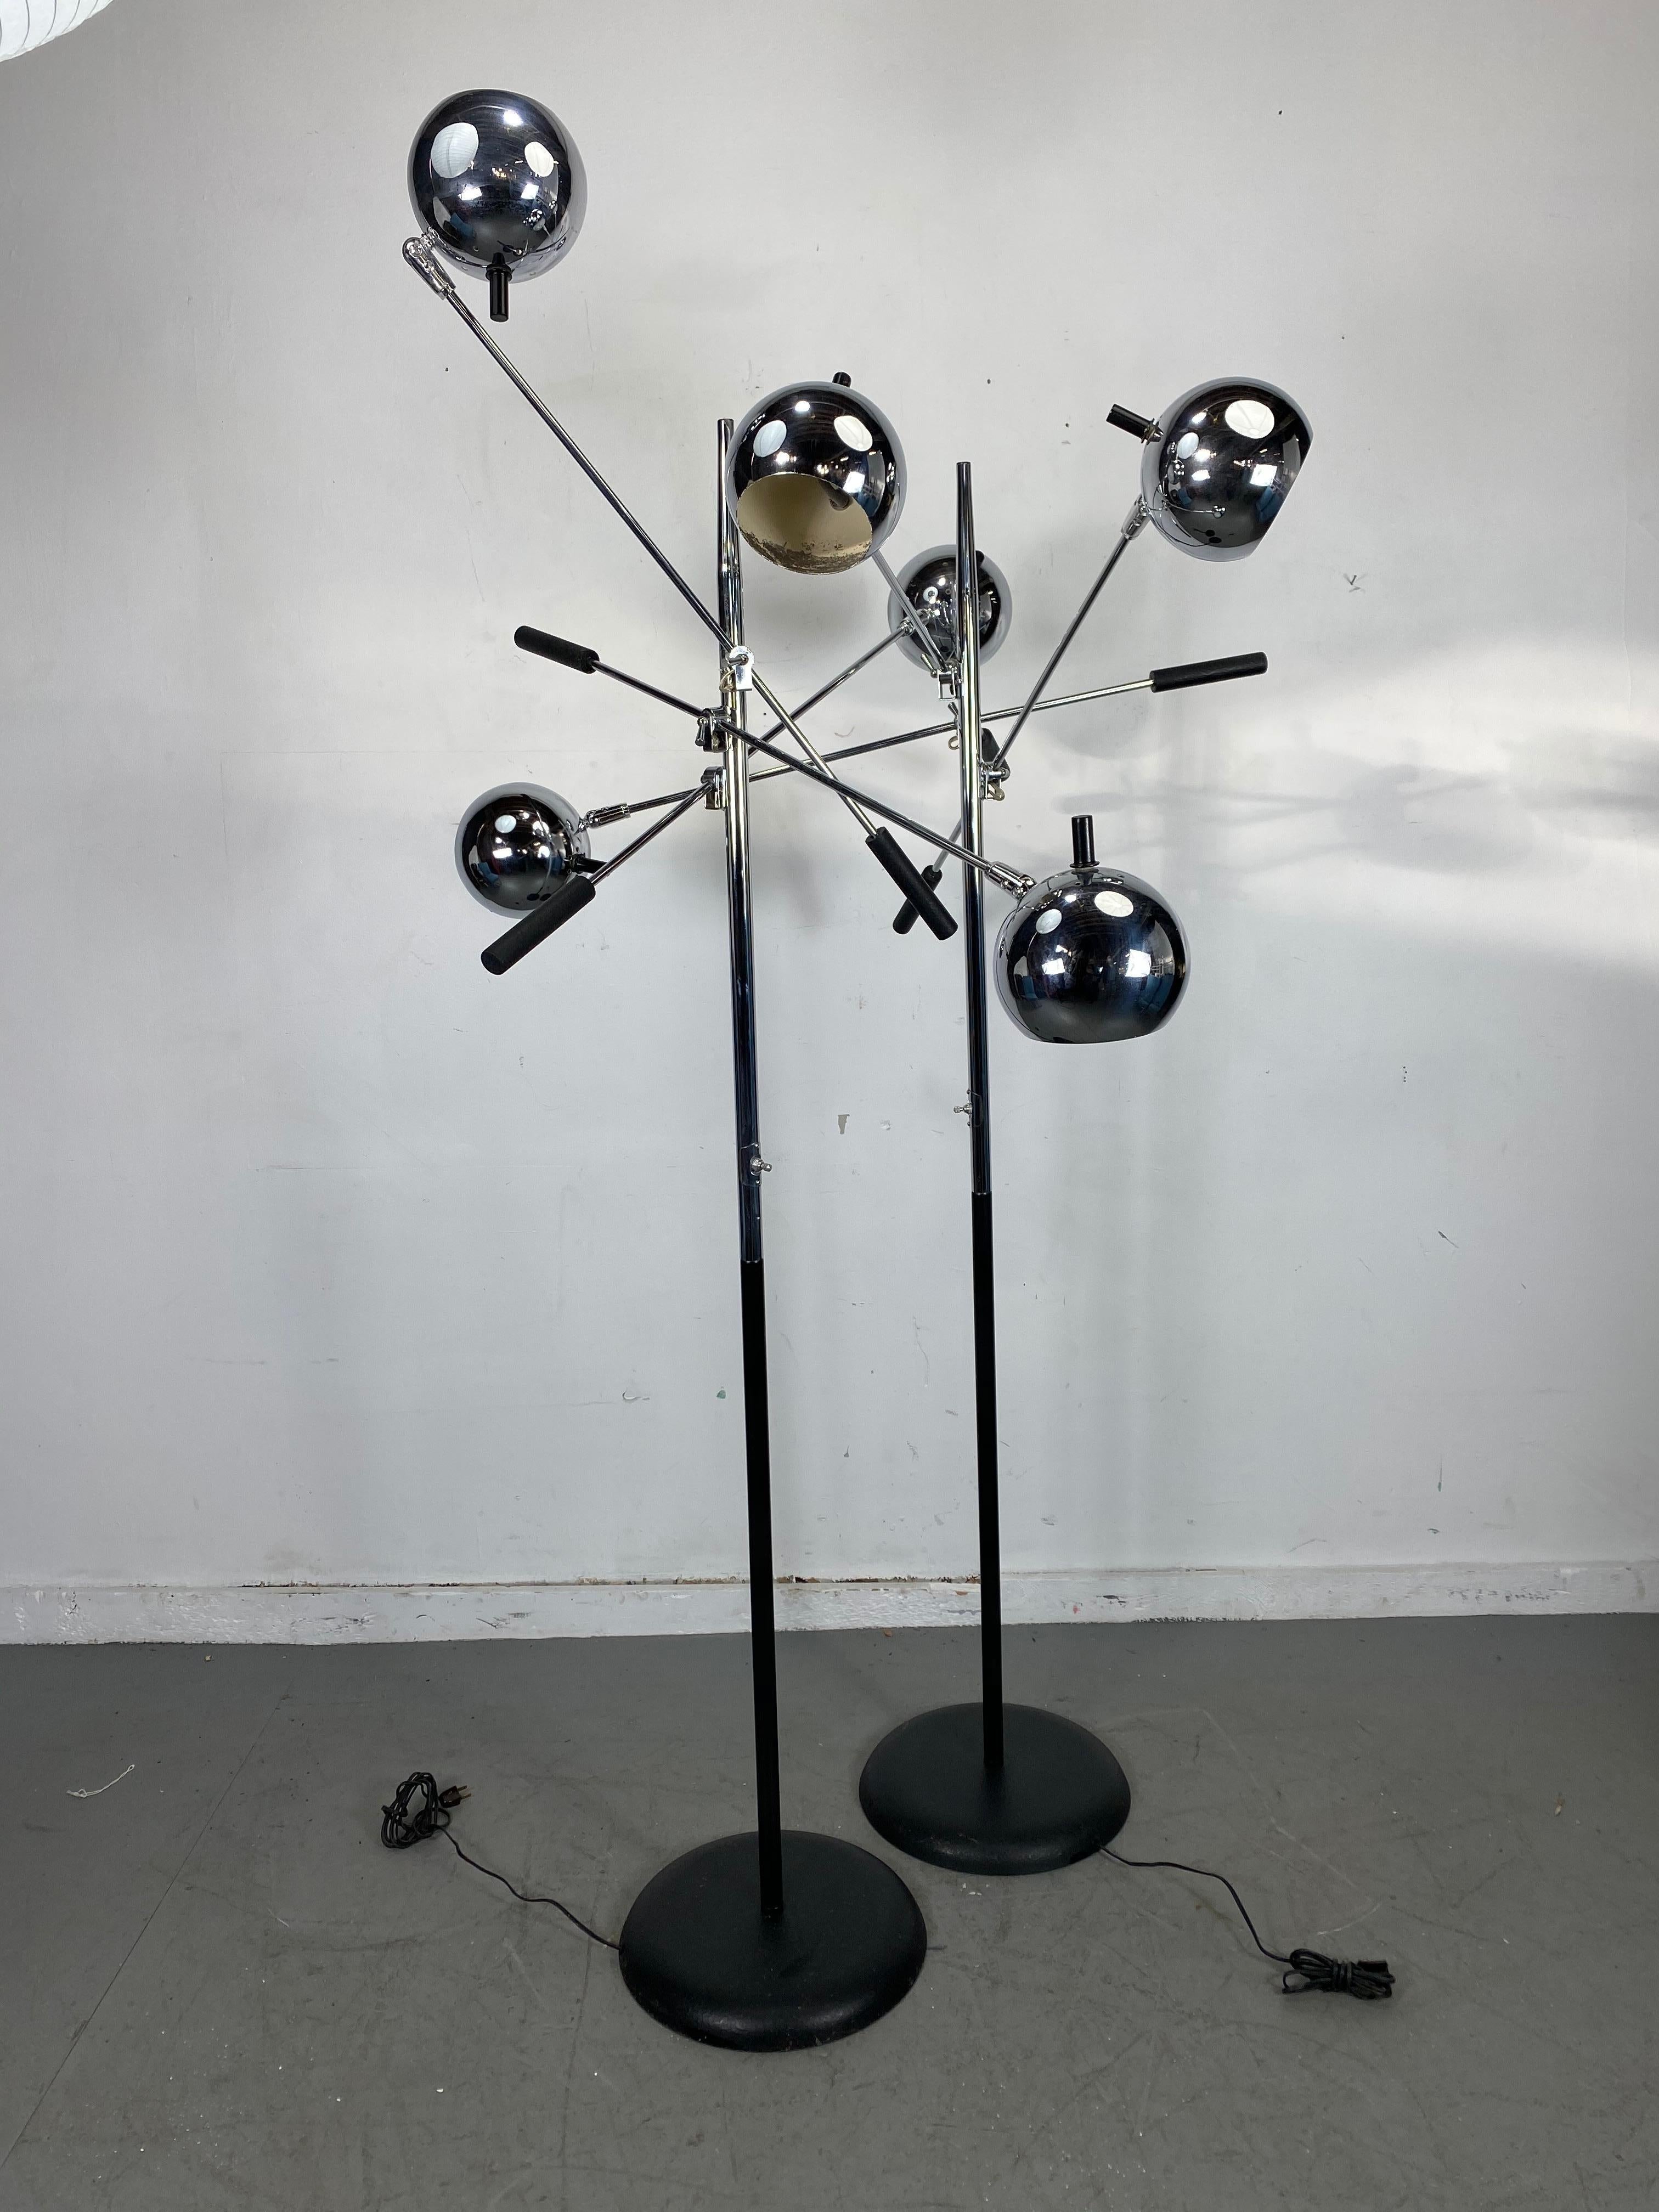 Painted Matched Pair of Robert Sonneman Triennale Eyegball Orbiter Floor Lamps